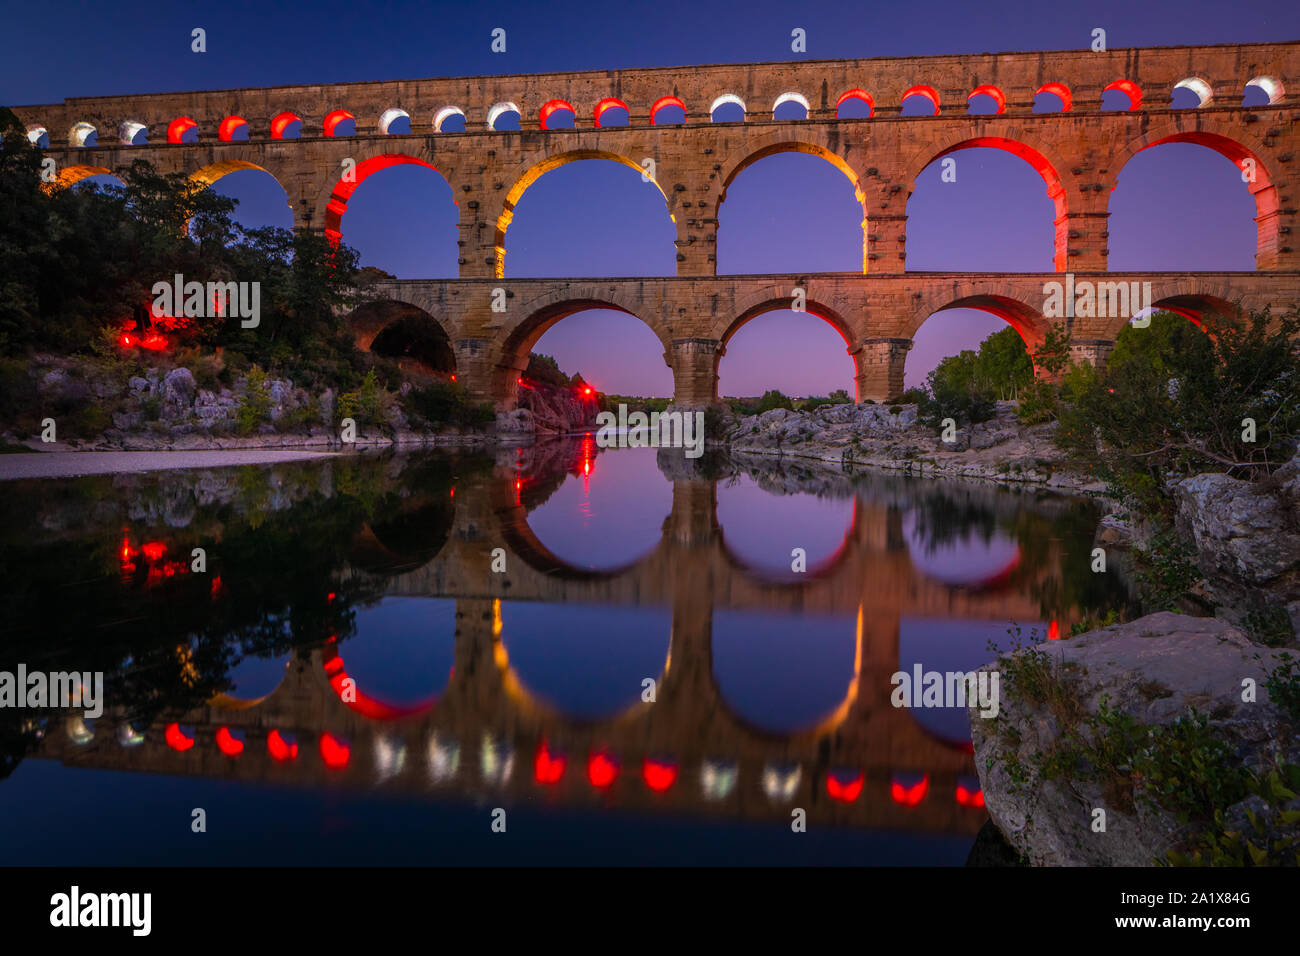 Le Pont du Gard est un aqueduc dans le sud de la France, dans la province de Provence, construit par l'Empire romain, et situé dans la région de Castillon-du-Gard sw Banque D'Images